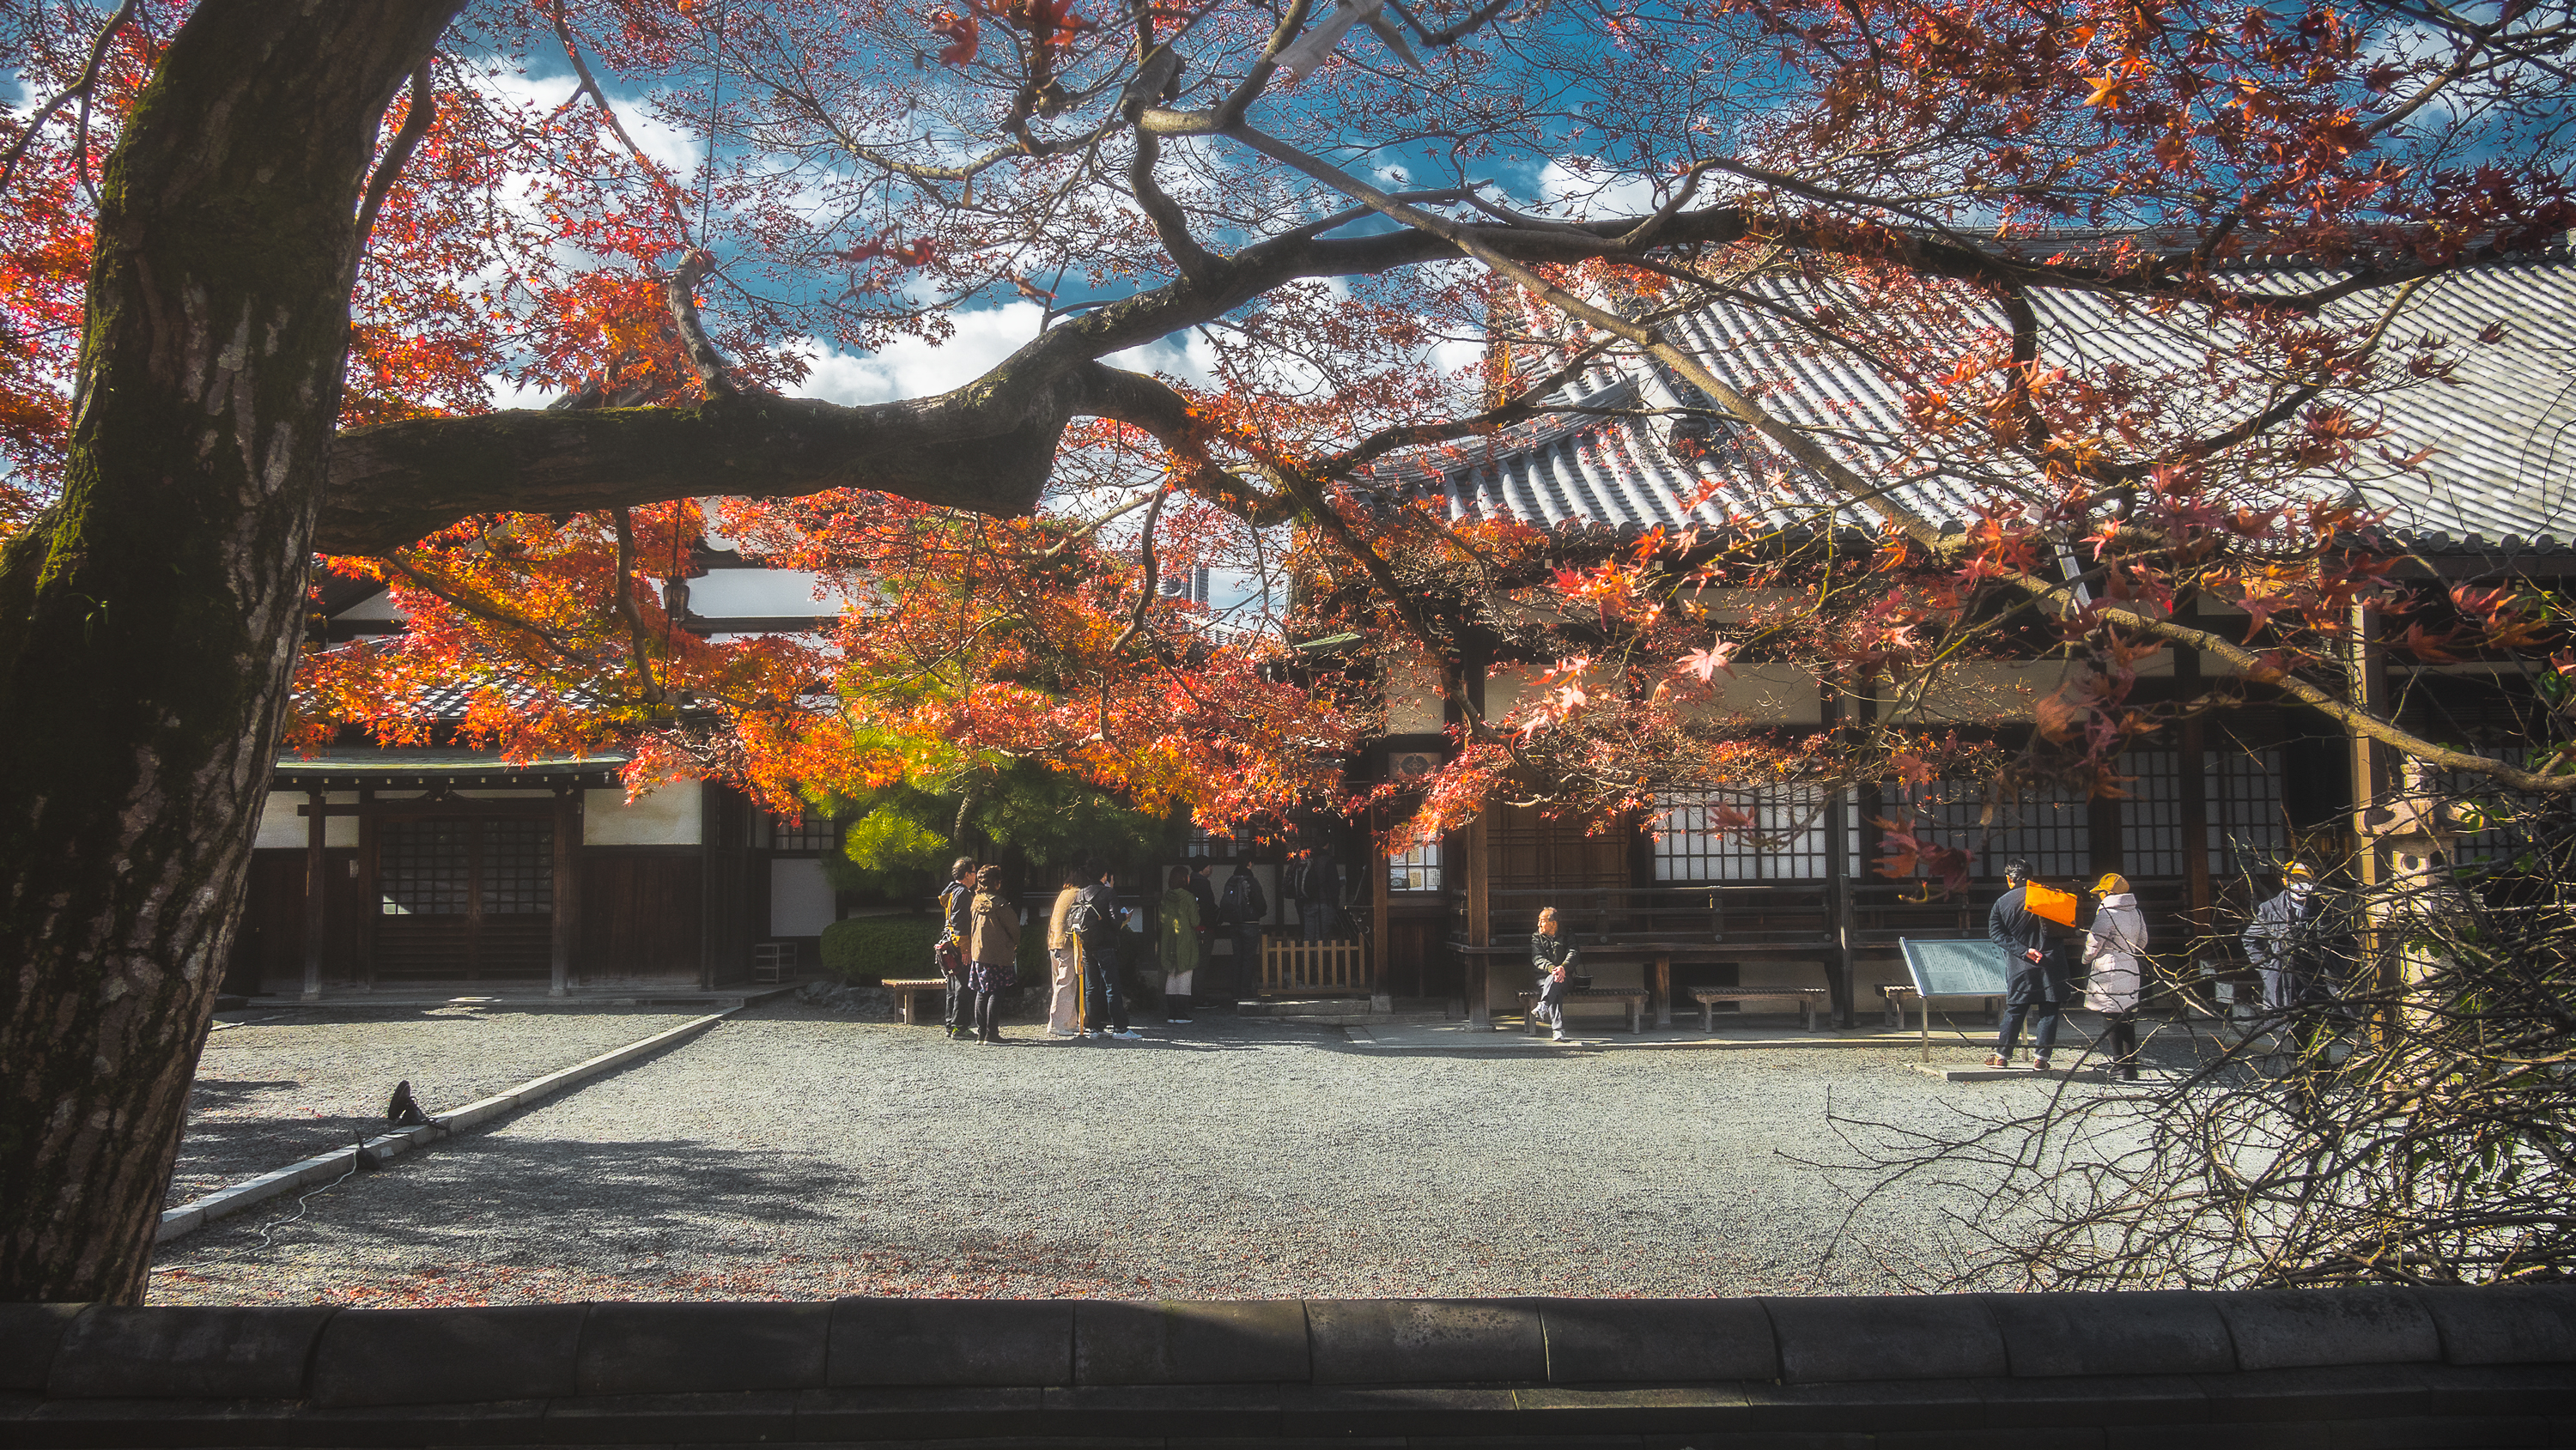 DSC01399 京都  平等院( 紅葉の庭園が美しい秋におすすめの写真スポット!撮影した写真の紹介、アクセス情報や交通手段など)